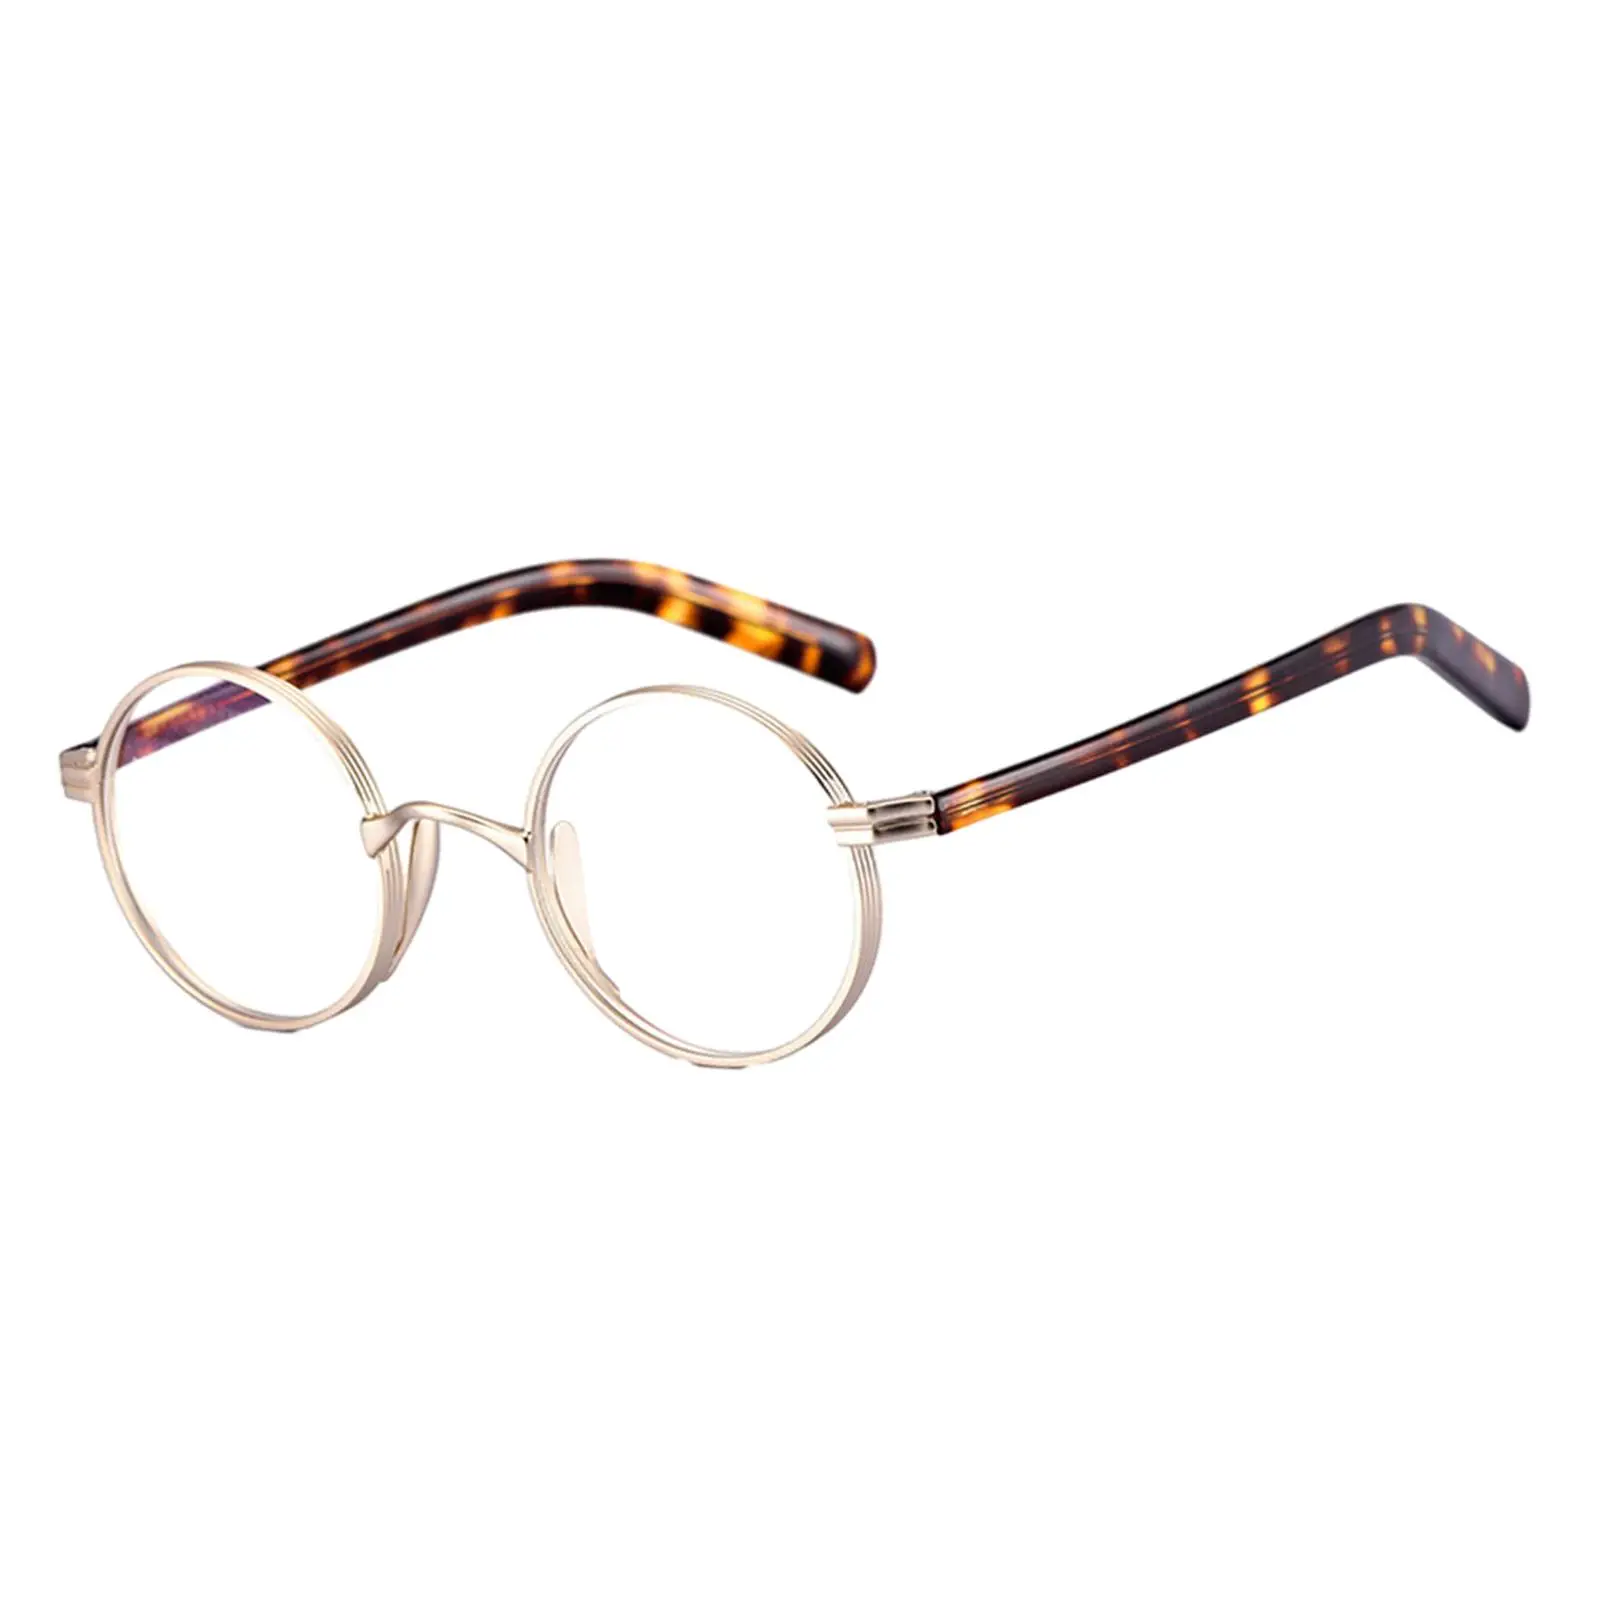 Glasses Frames Oval Oversized Lightweight for Men Women Classic Full Rim Titanium Alloy Eyeglass Frame Round Eyeglasses Frames